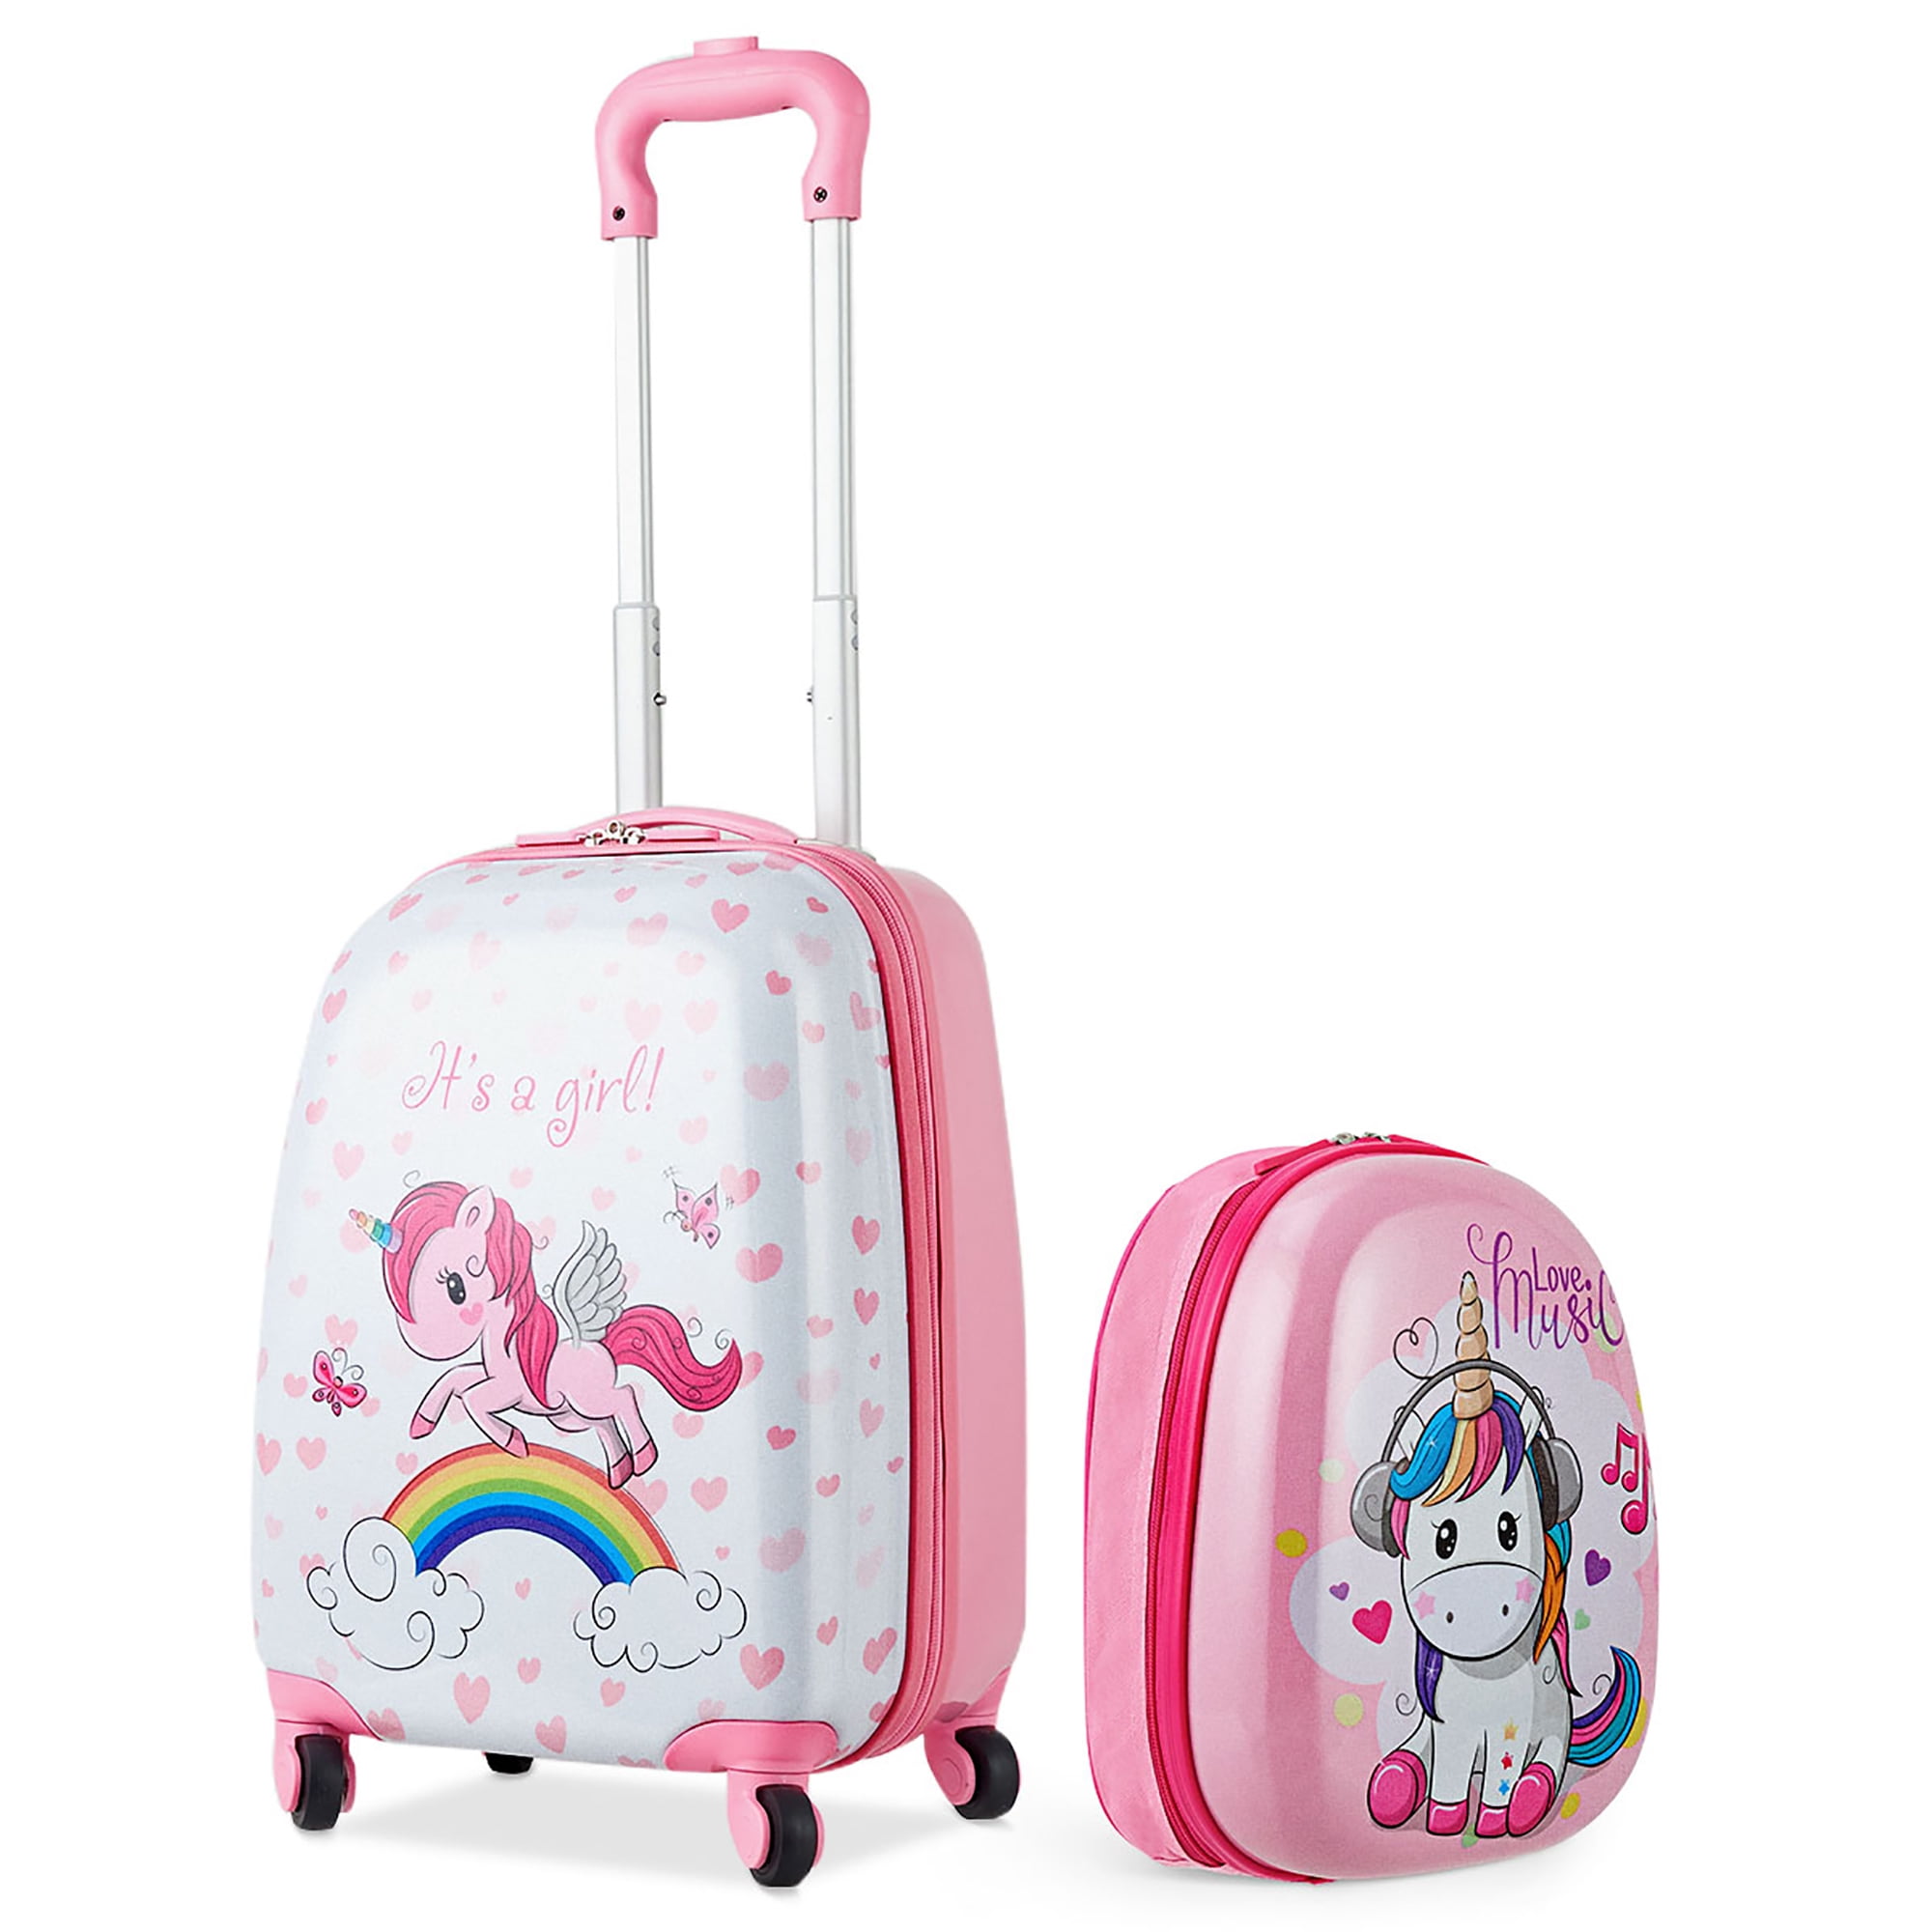 Kids Luggage, Kids Suitcase Luggage